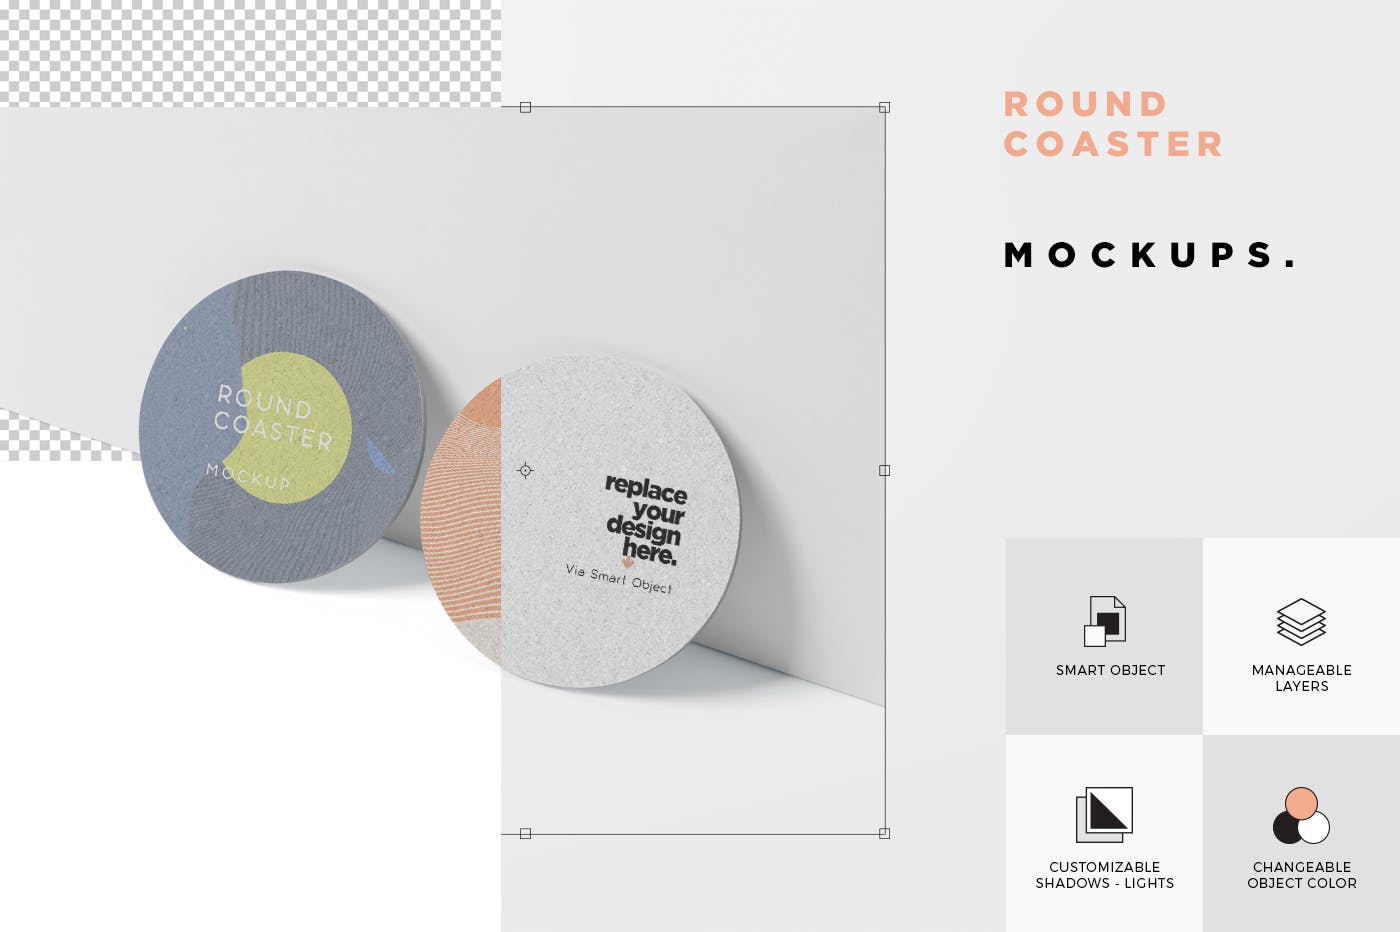 圆形杯垫图案设计效果图第一素材精选 Round Coaster Mock-Up – Medium Size插图(5)